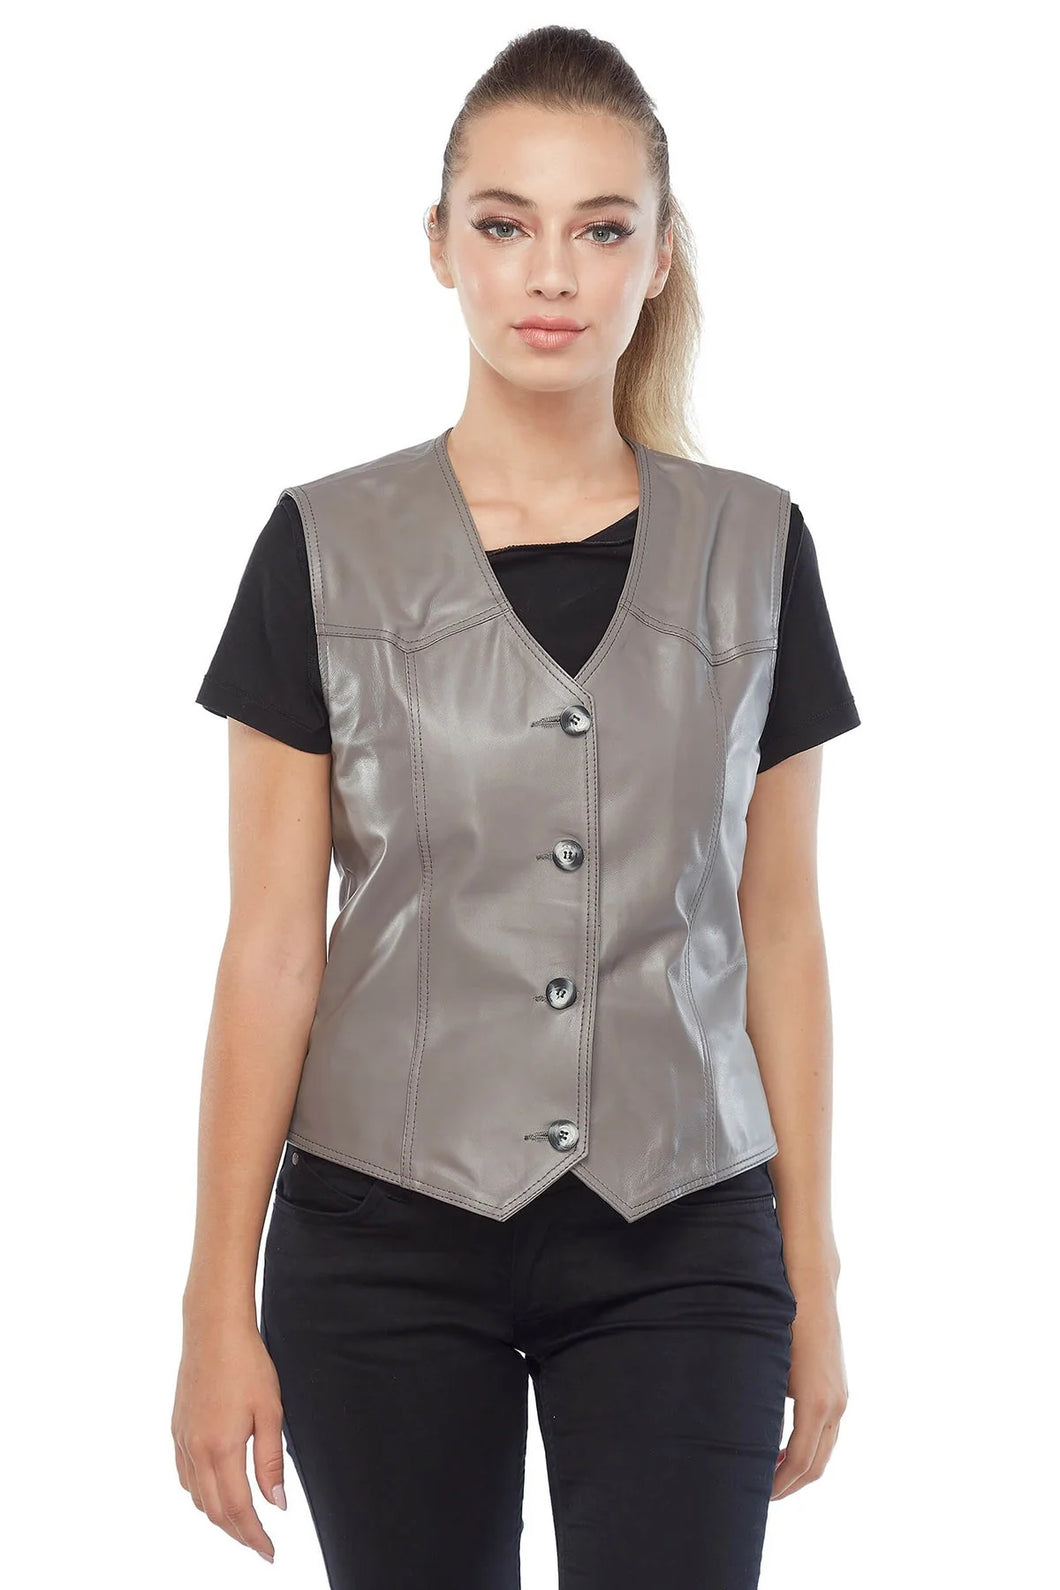 Women's Solid Grey Biker Leather Vest